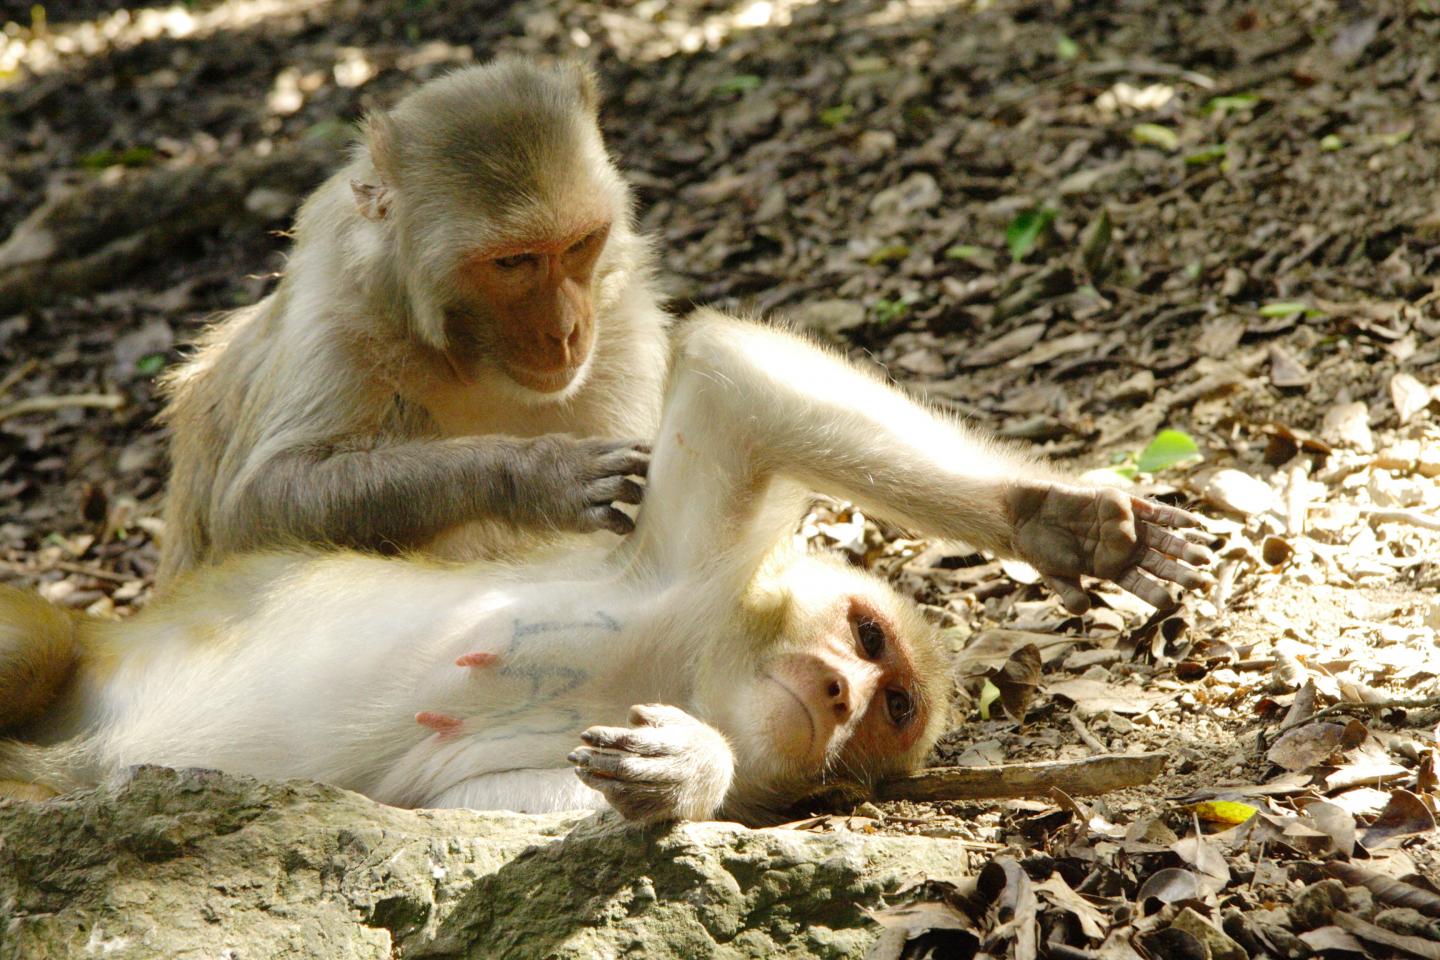 Rhesus Macaques Grooming